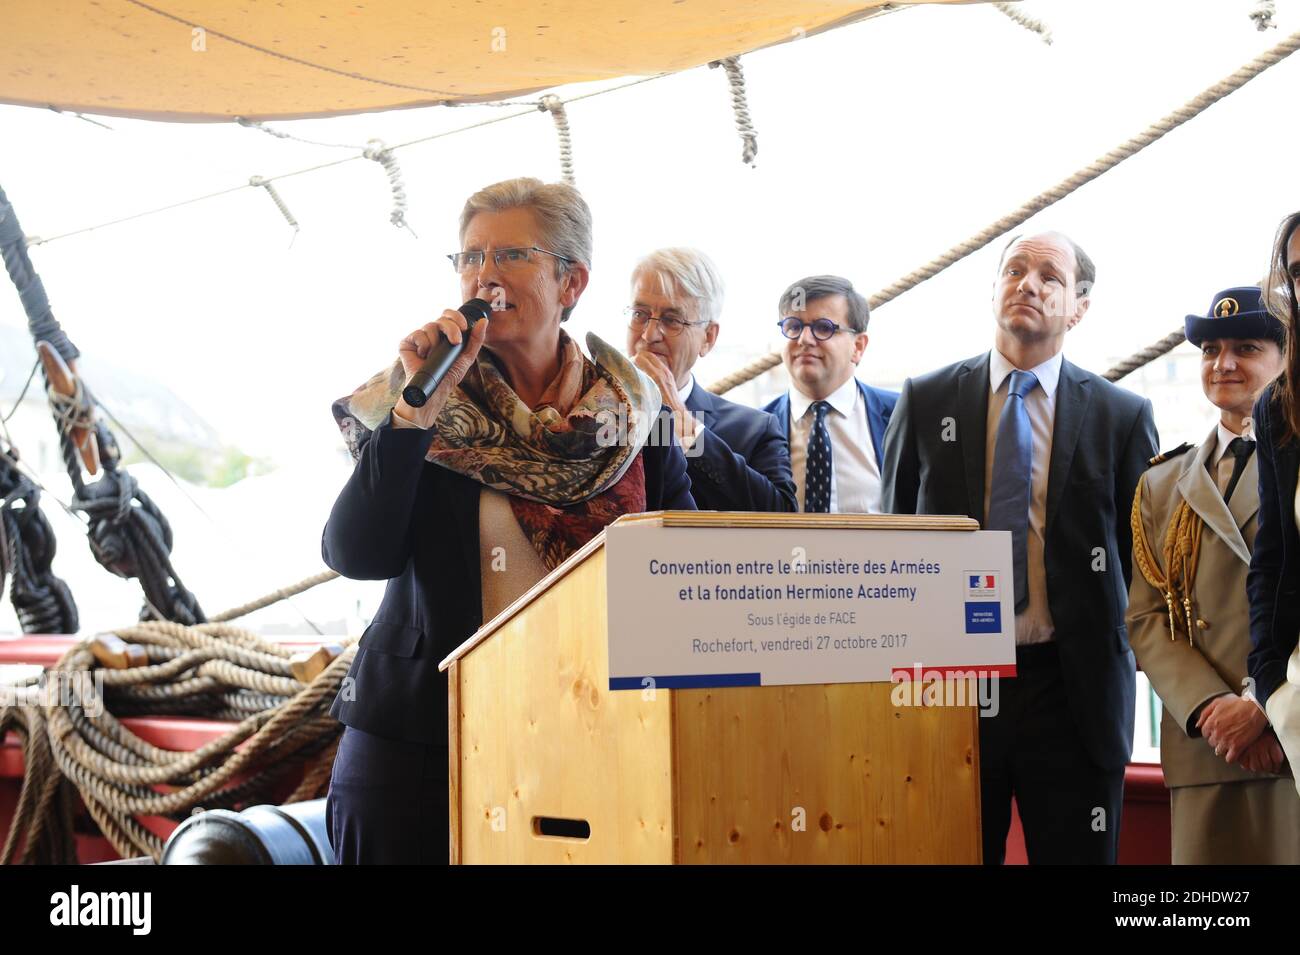 Genevieve Darrieussecq , segretario di Stato agli eserciti, a Rochefort-sur-mer, Francia, il 27 ottobre 2017. Foto di Arnault Serriere/ABACAPRESS.COM Foto Stock